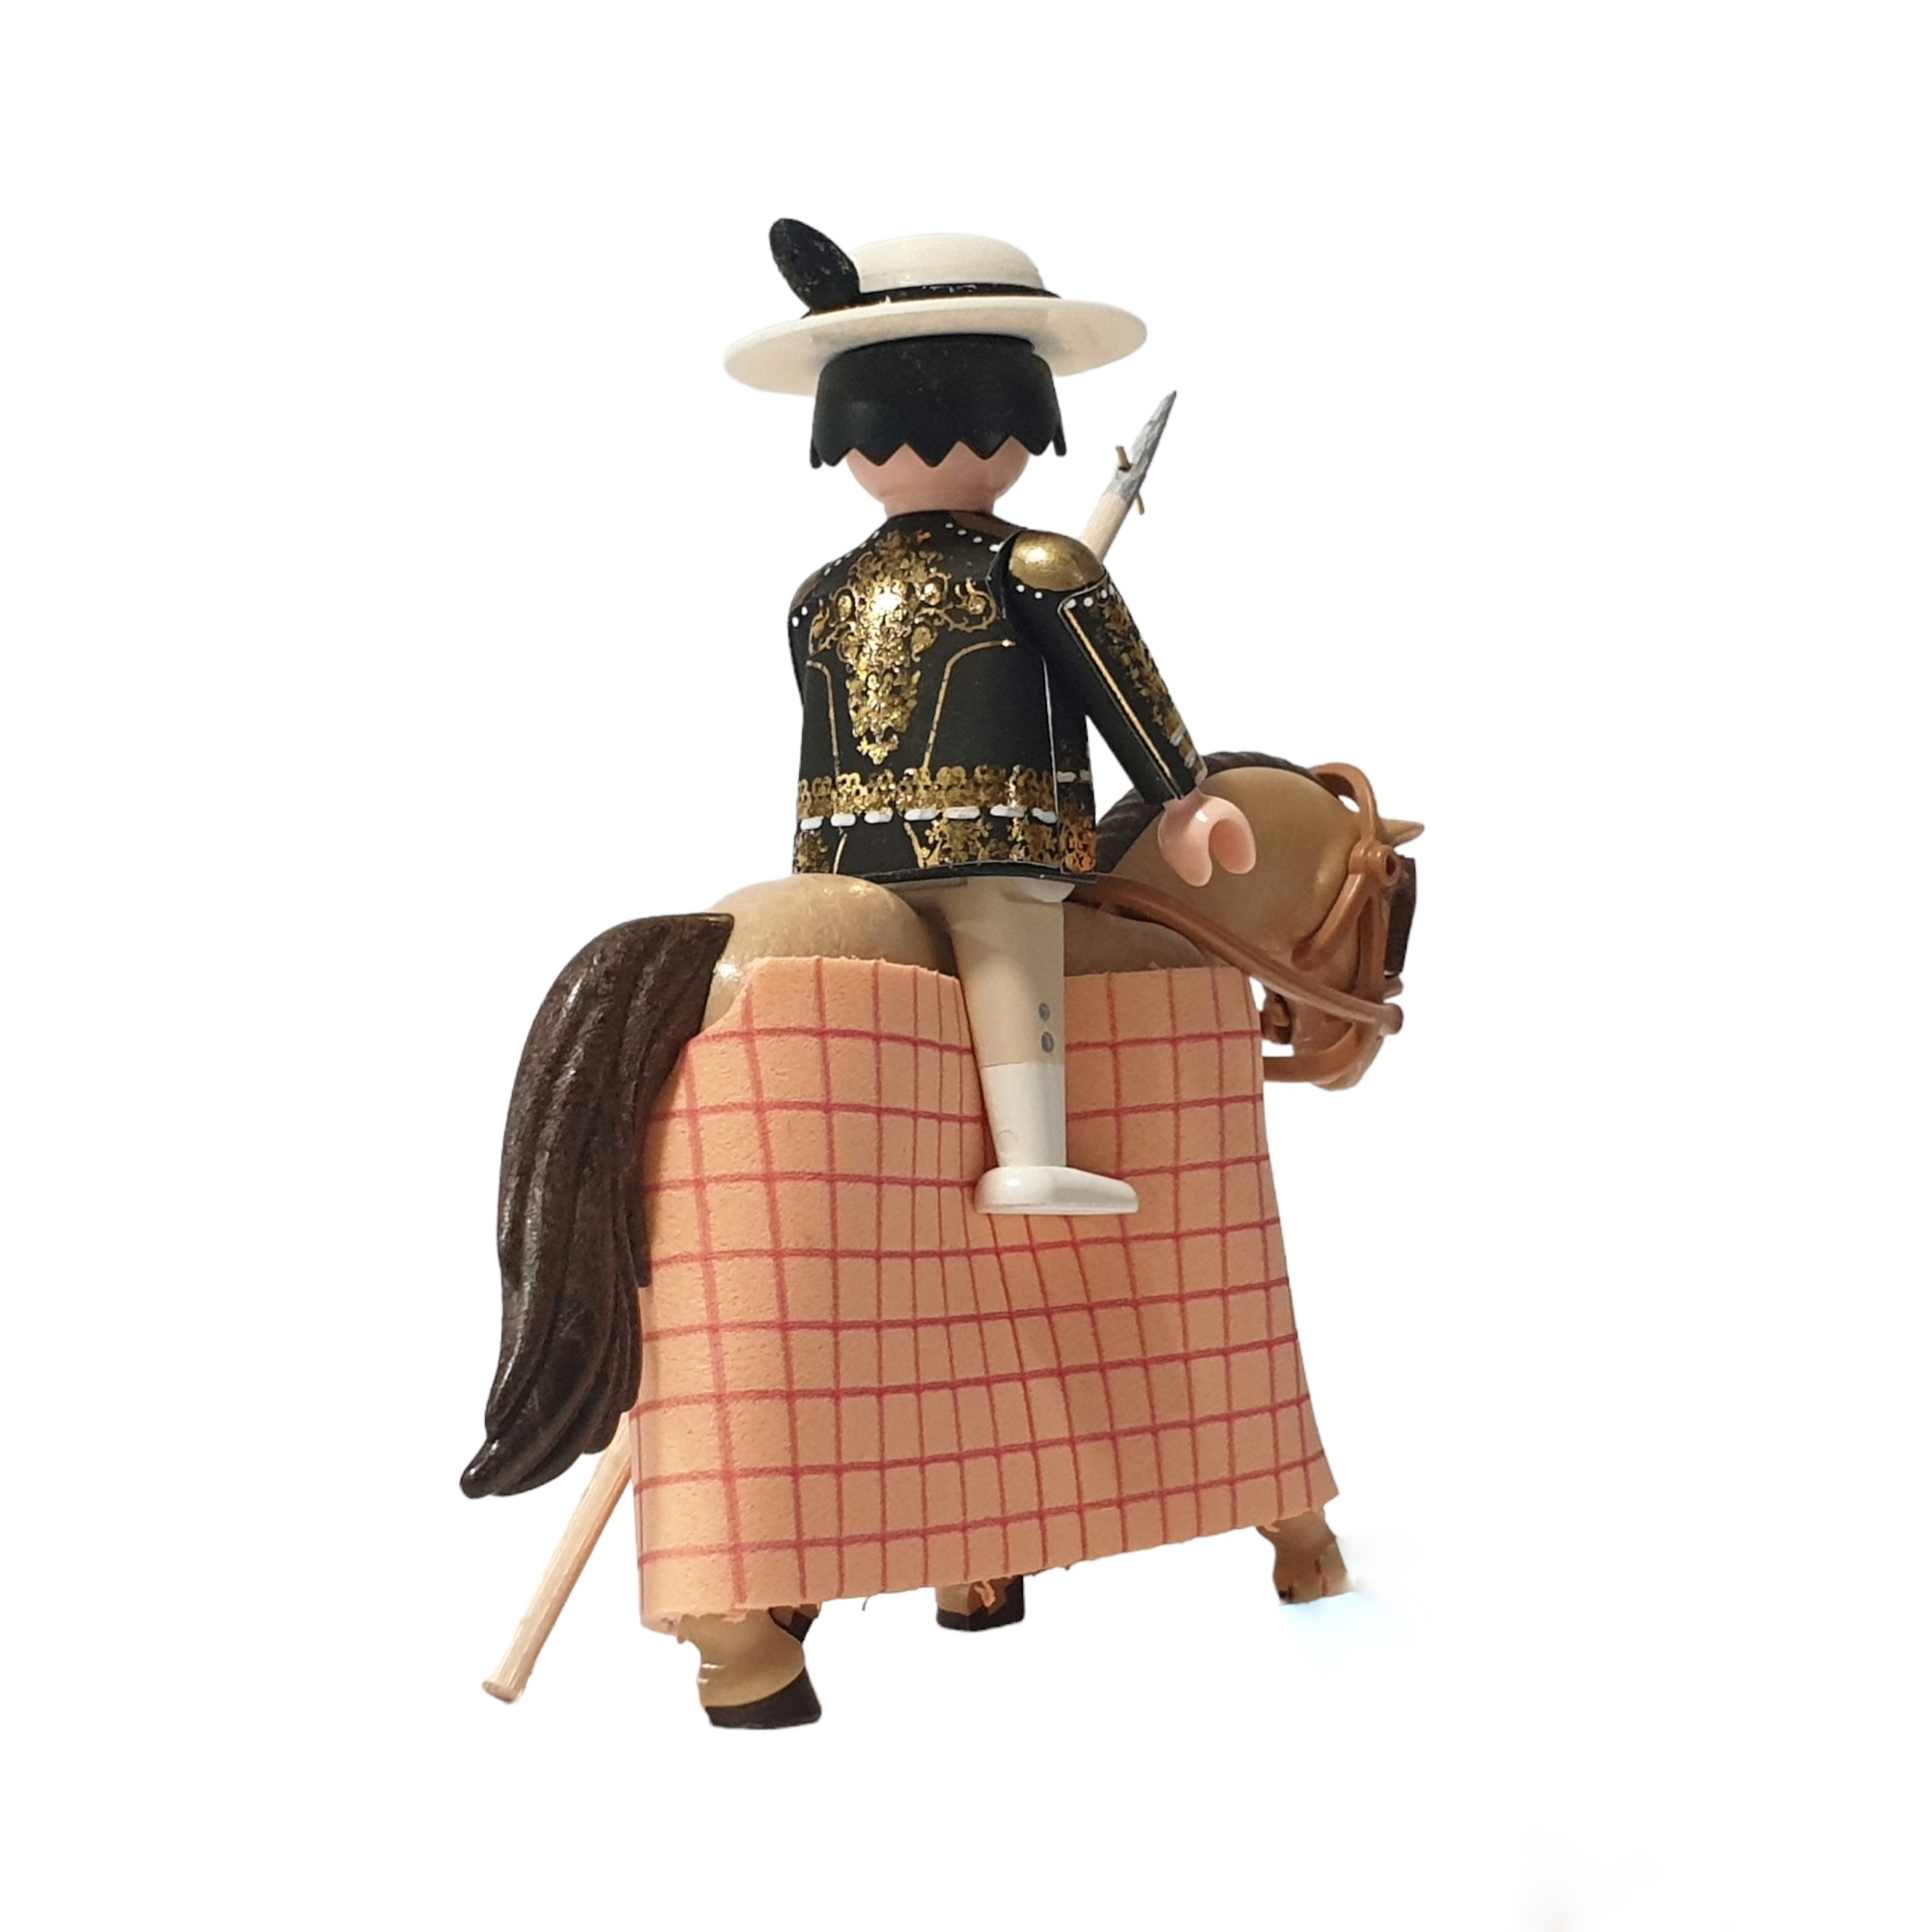 Figurita taurina Picador con  caballo,tipo click